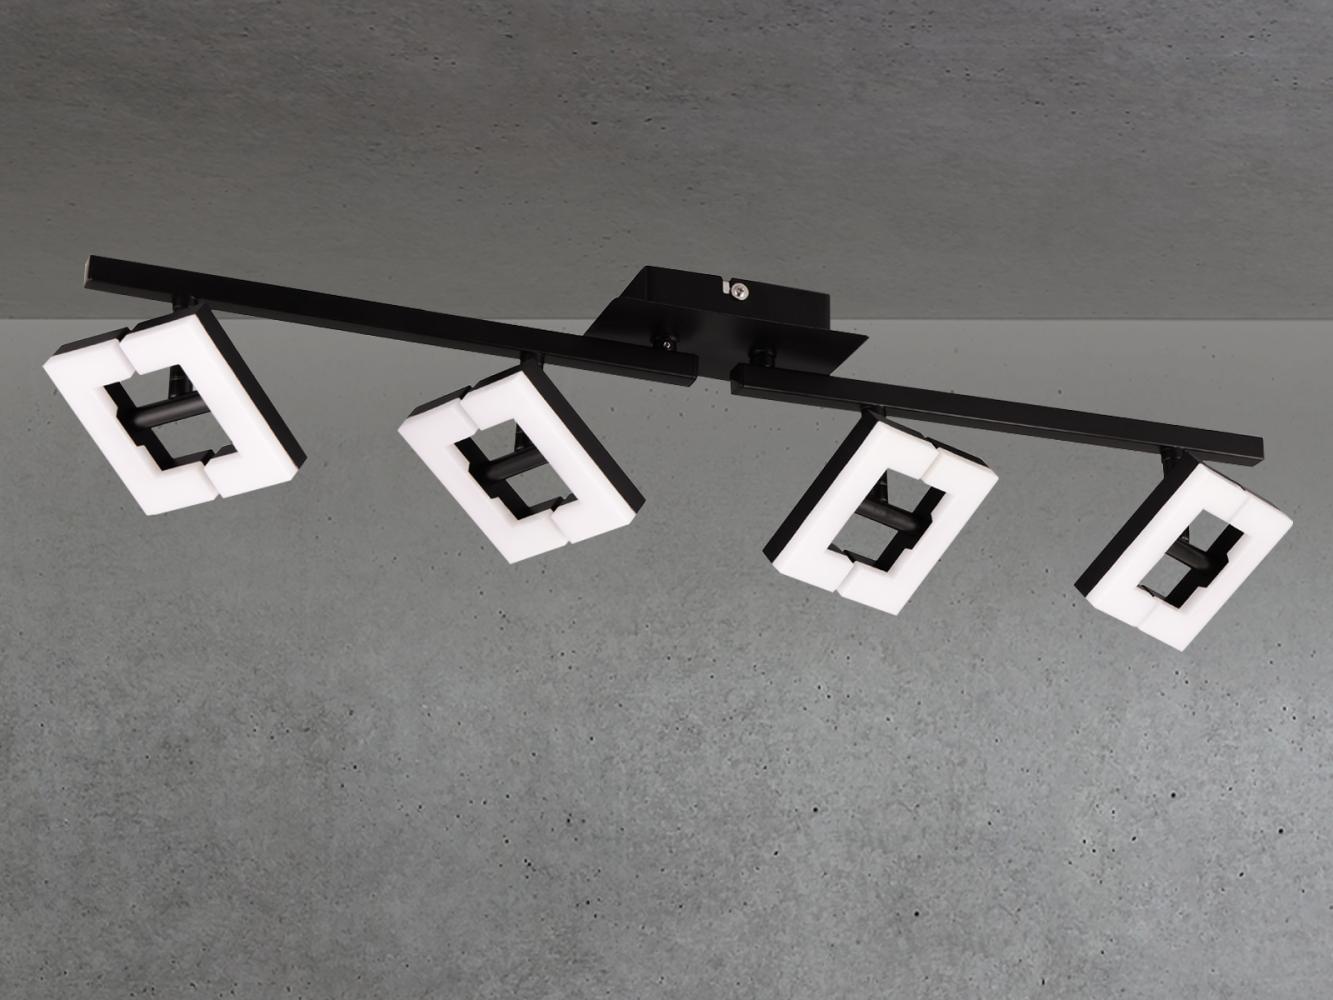 LED Deckenstrahler in Schwarz / Weiß, Spots geteilt, Breite 69cm Bild 1